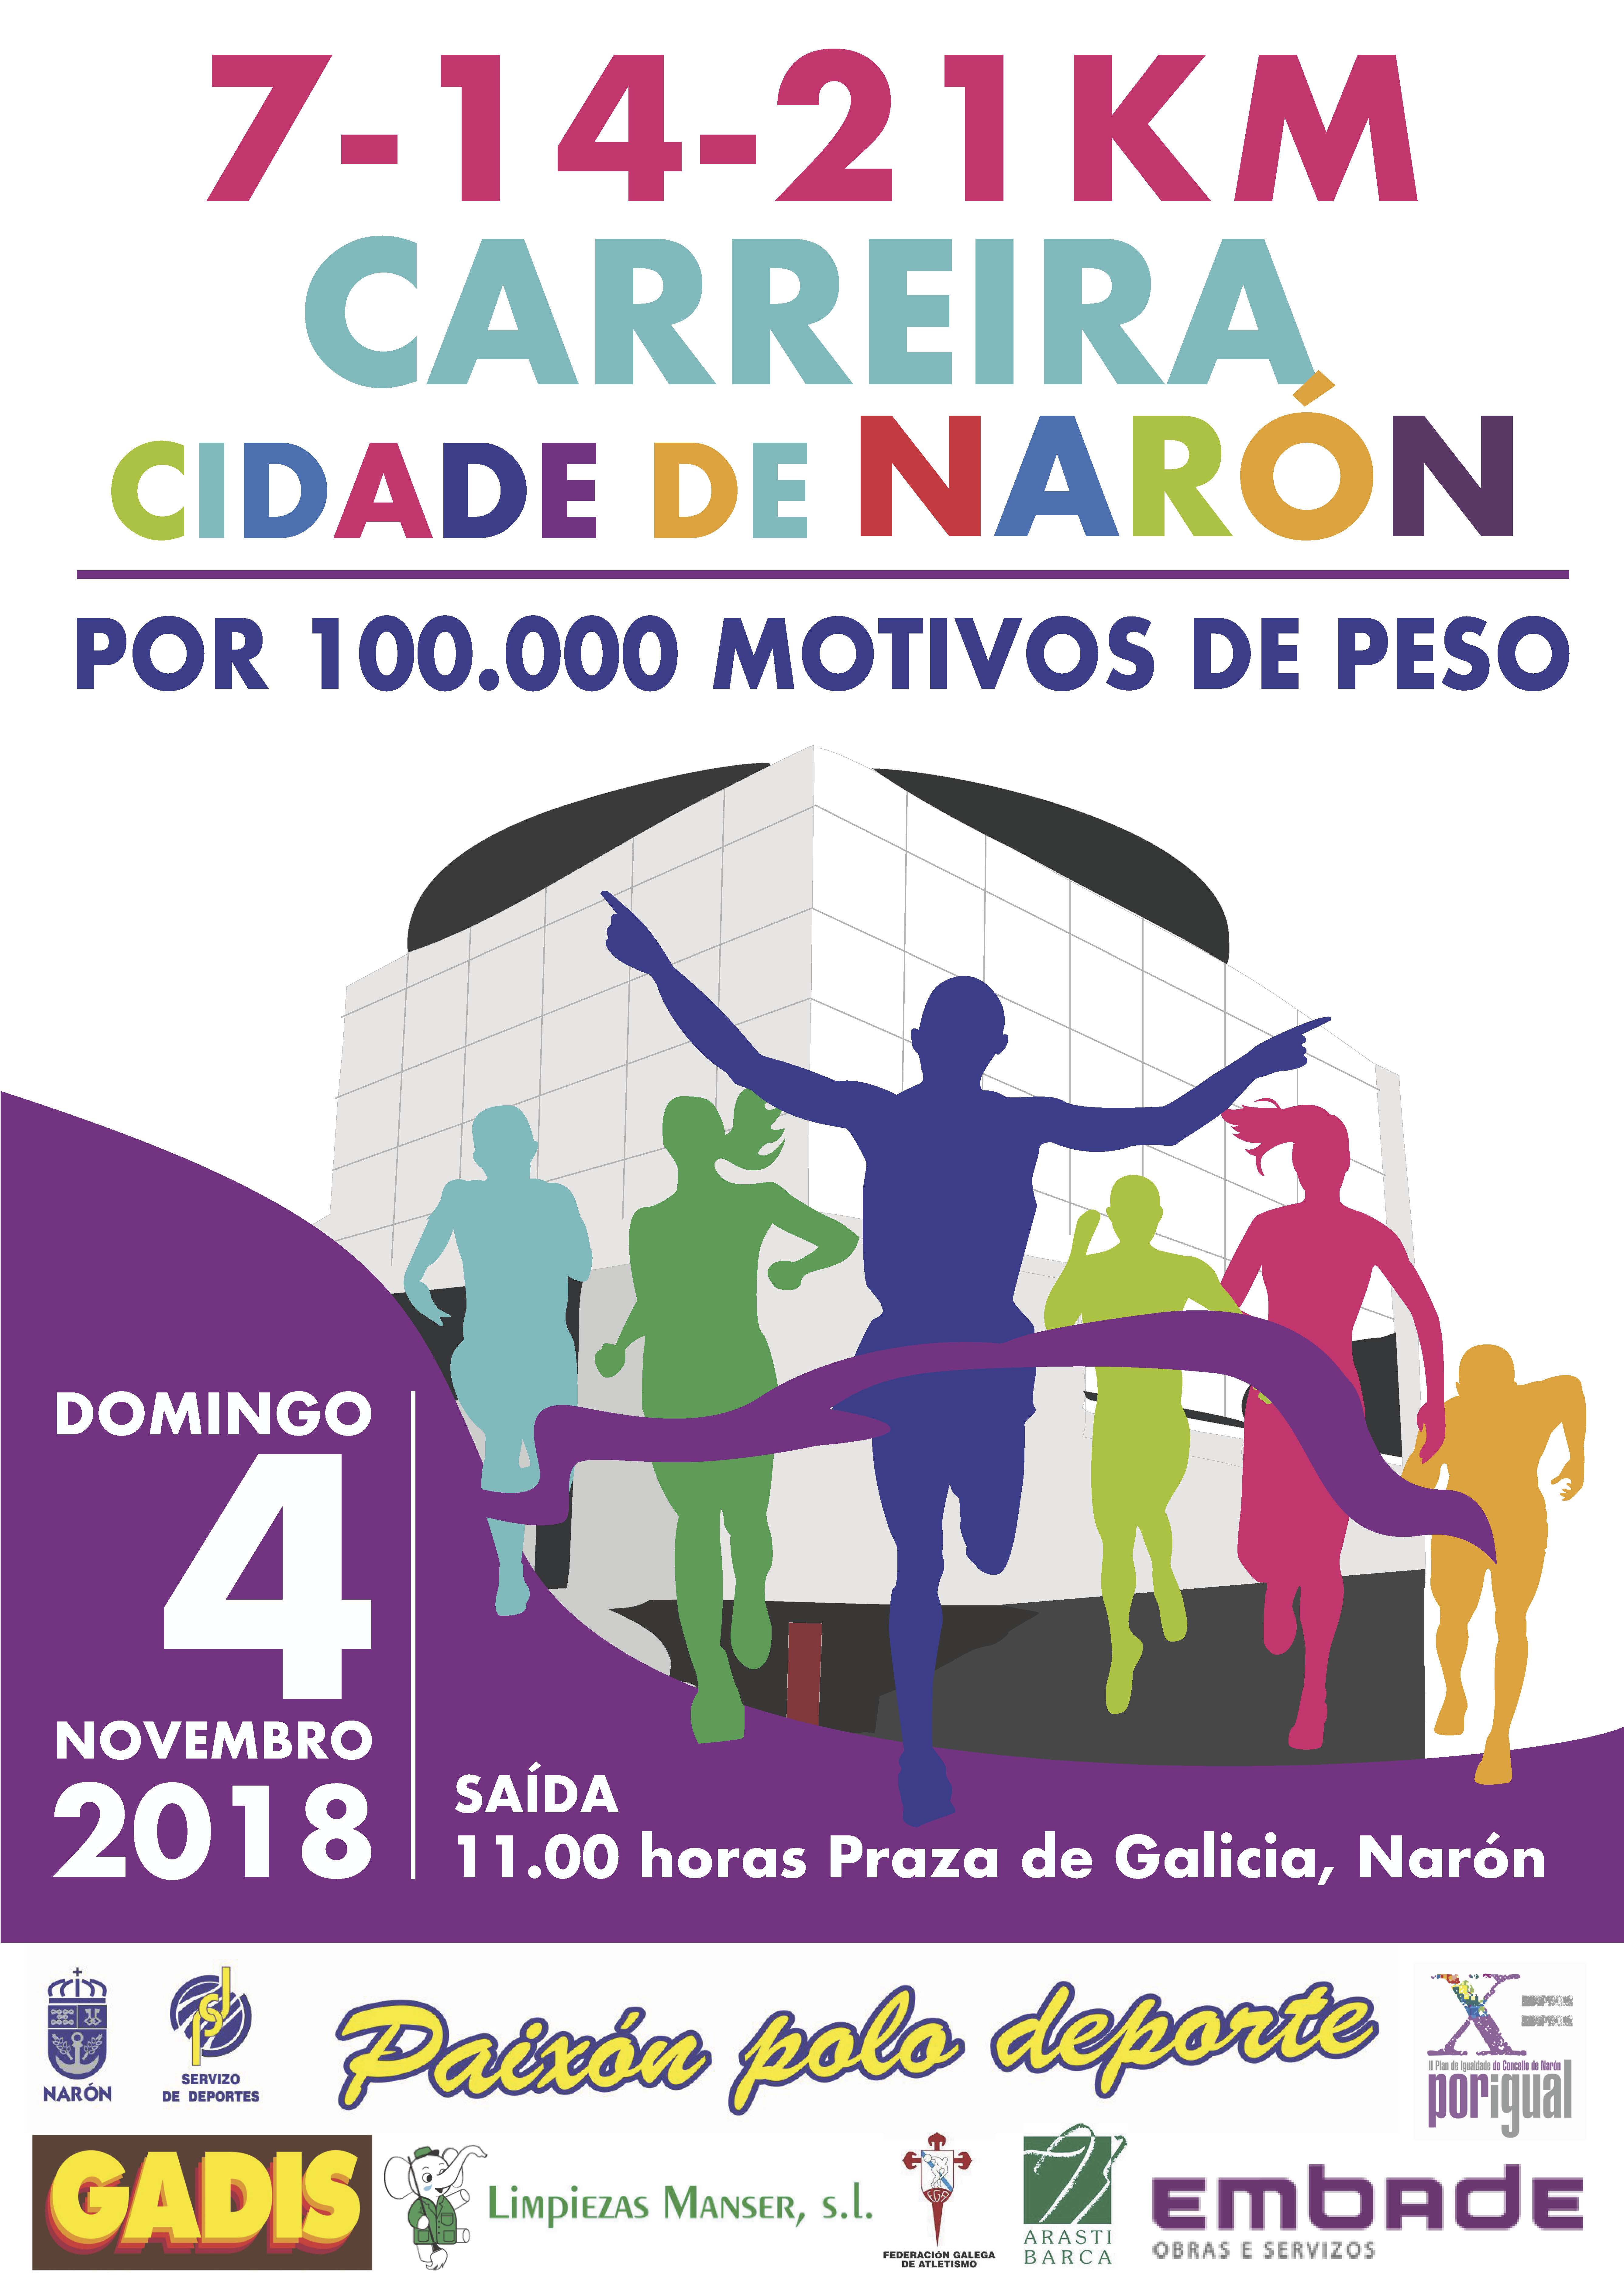 Carreira Cidade de Narón 7 – 14 – 21 Km.